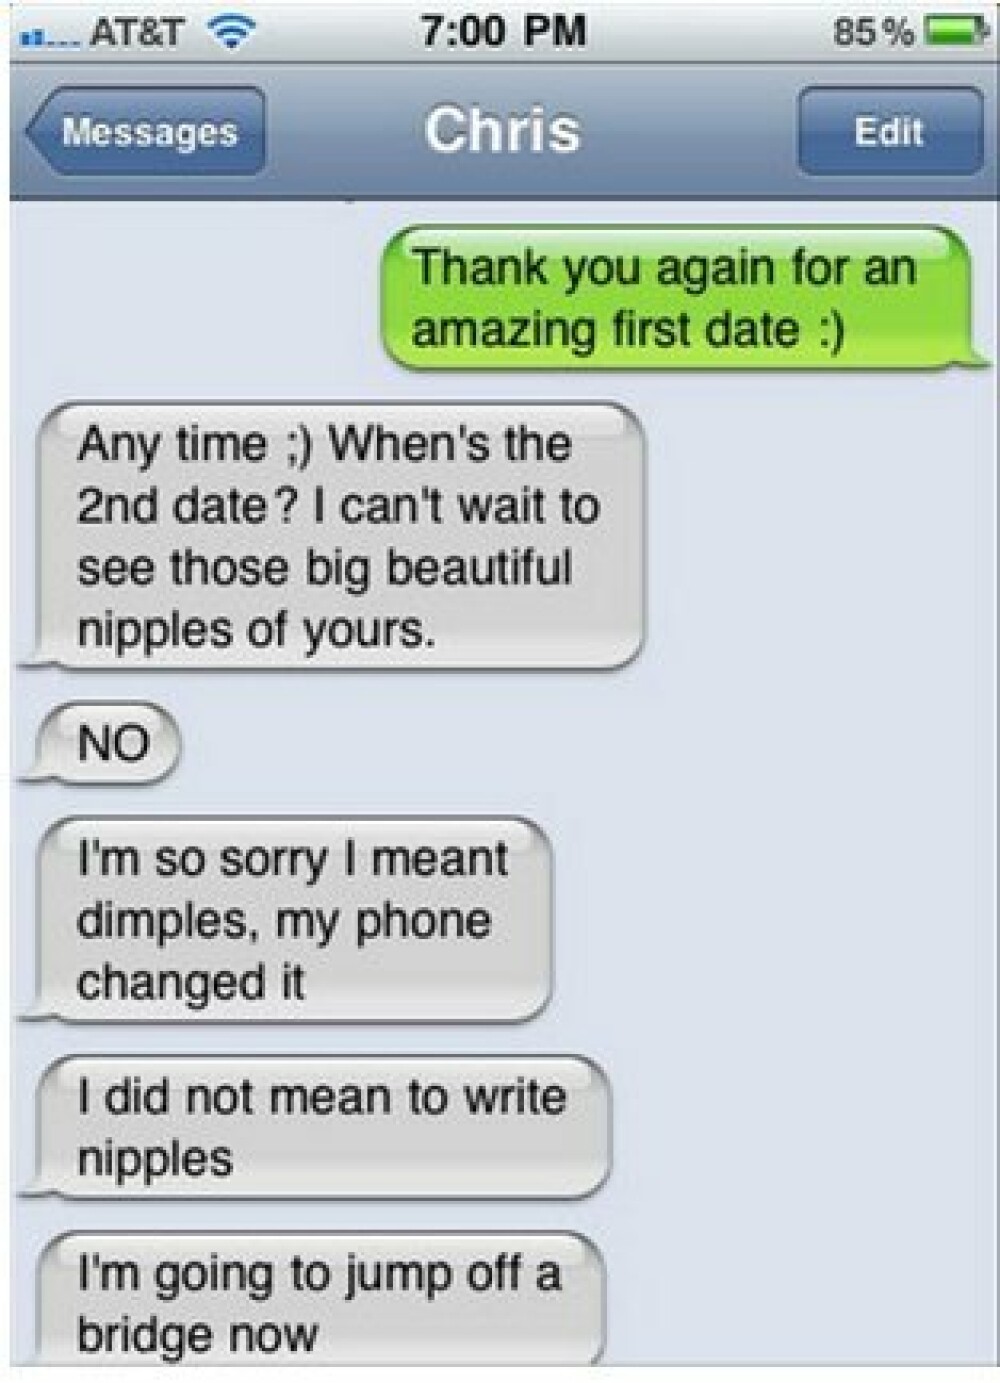 Cele mai nefericite erori de scriere dintr-un SMS de care ar trebui sa va feriti - Imaginea 2